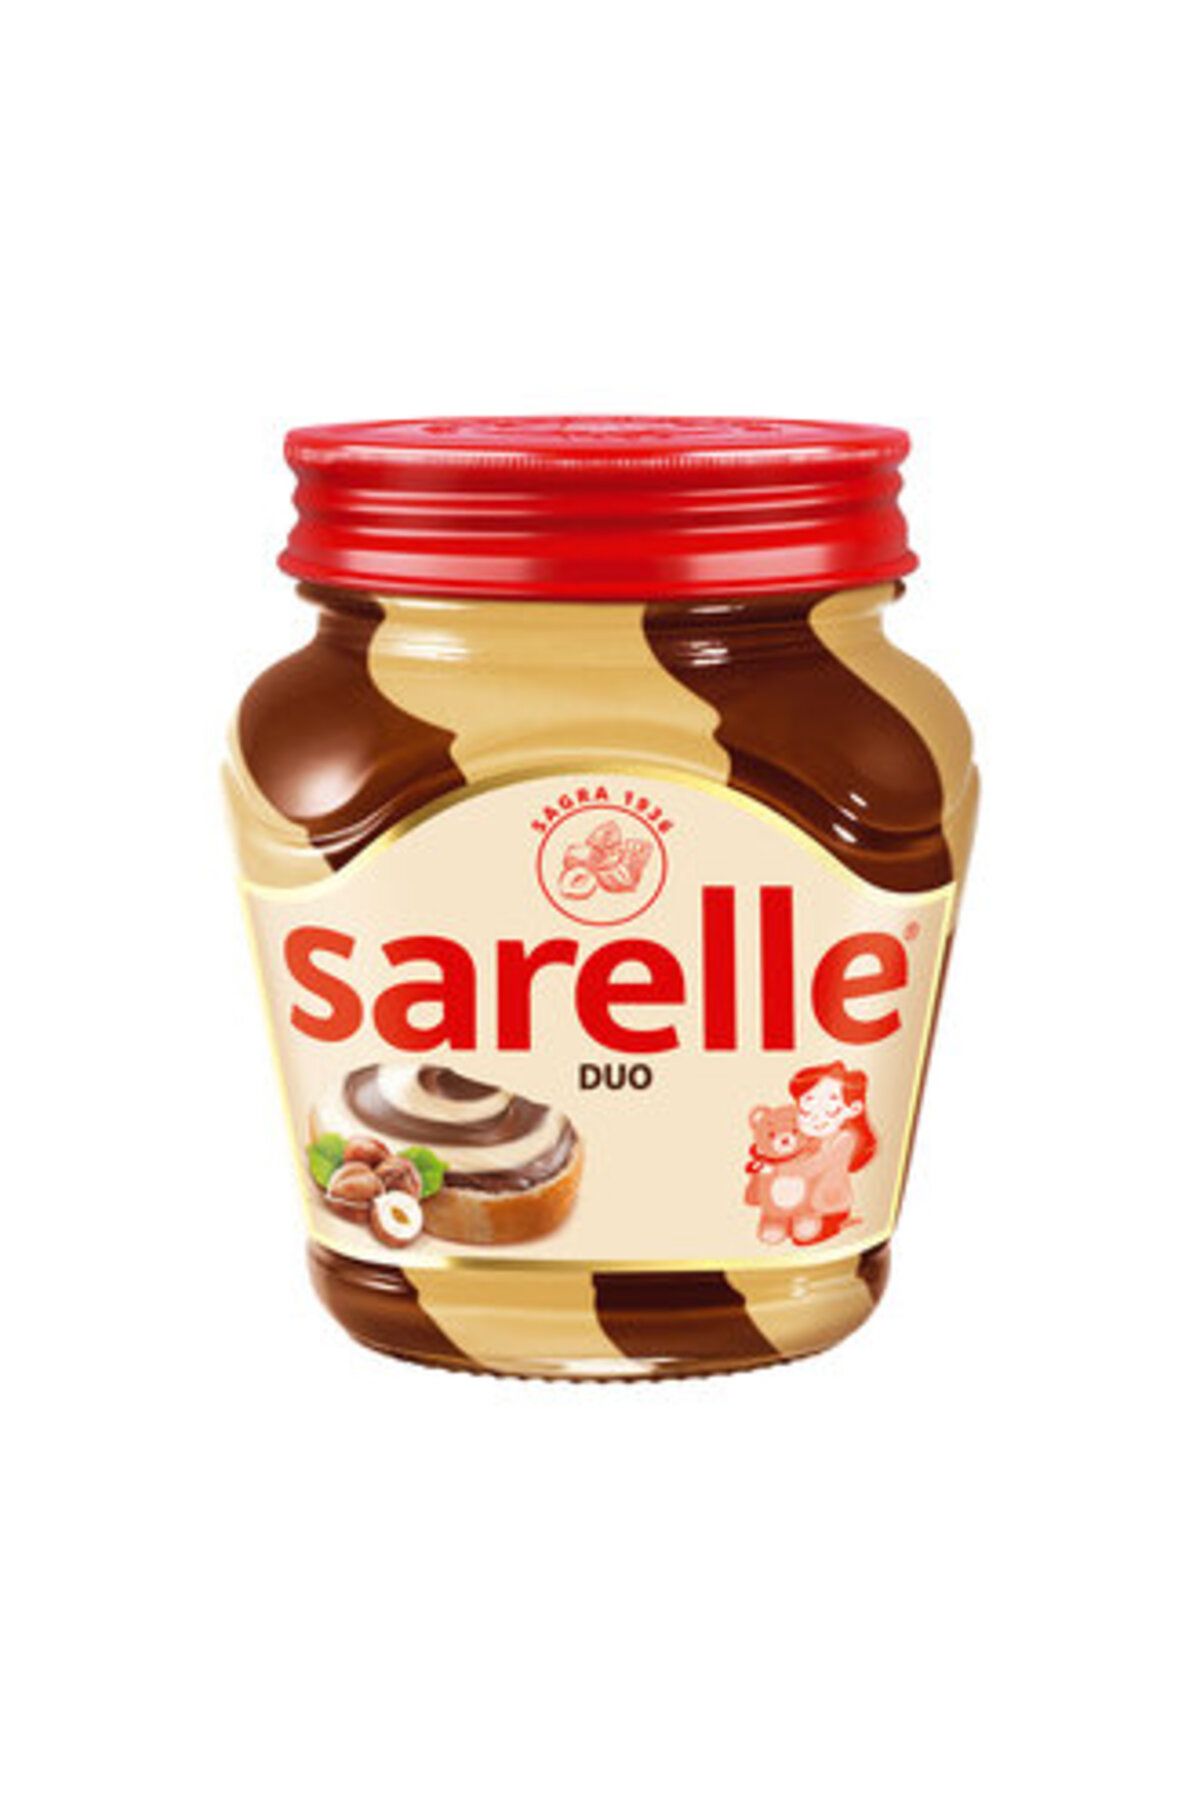 Sarelle Duo Sütlü Kakaolu Fındık Kreması 350 Gr ( NUTELLA GO 52 GRAM )